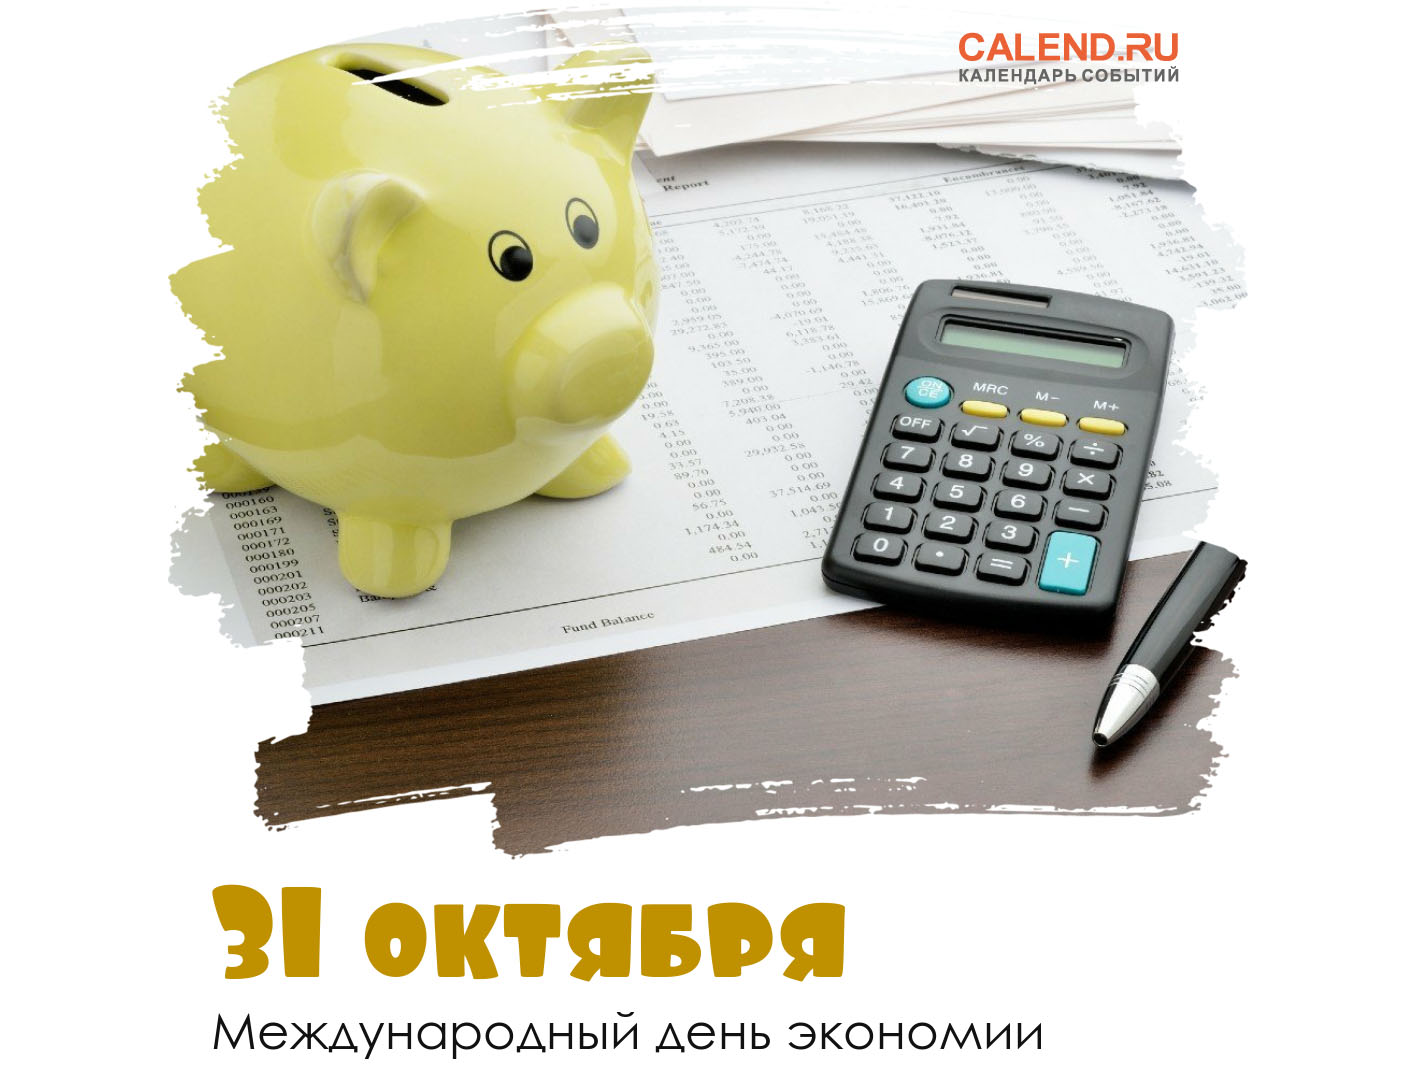 31 октября — Международный день экономии / Открытка дня / Журнал Calend.ru